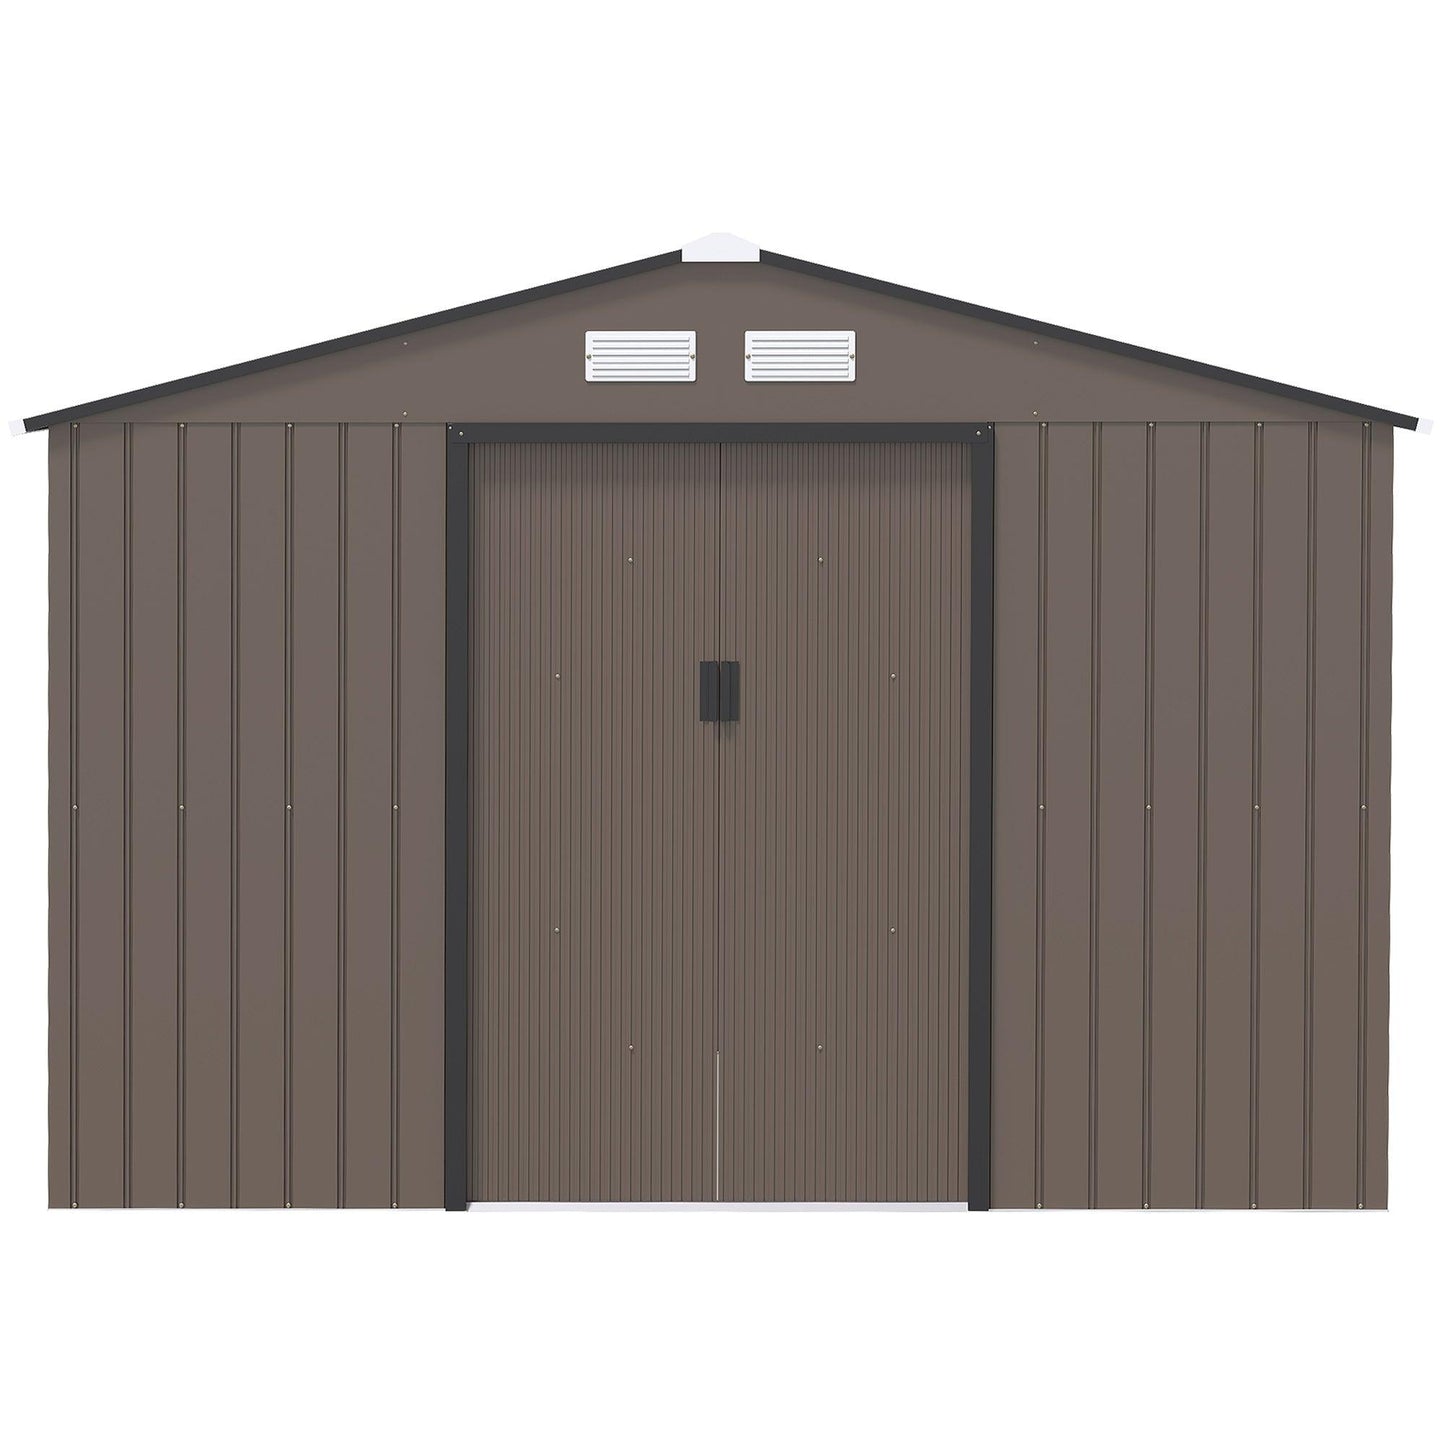 Outsunny 9 X 6FT Outdoor Storage Garden Shed Sliding Door Galvanised Metal Brown - ALL4U RETAILER LTD